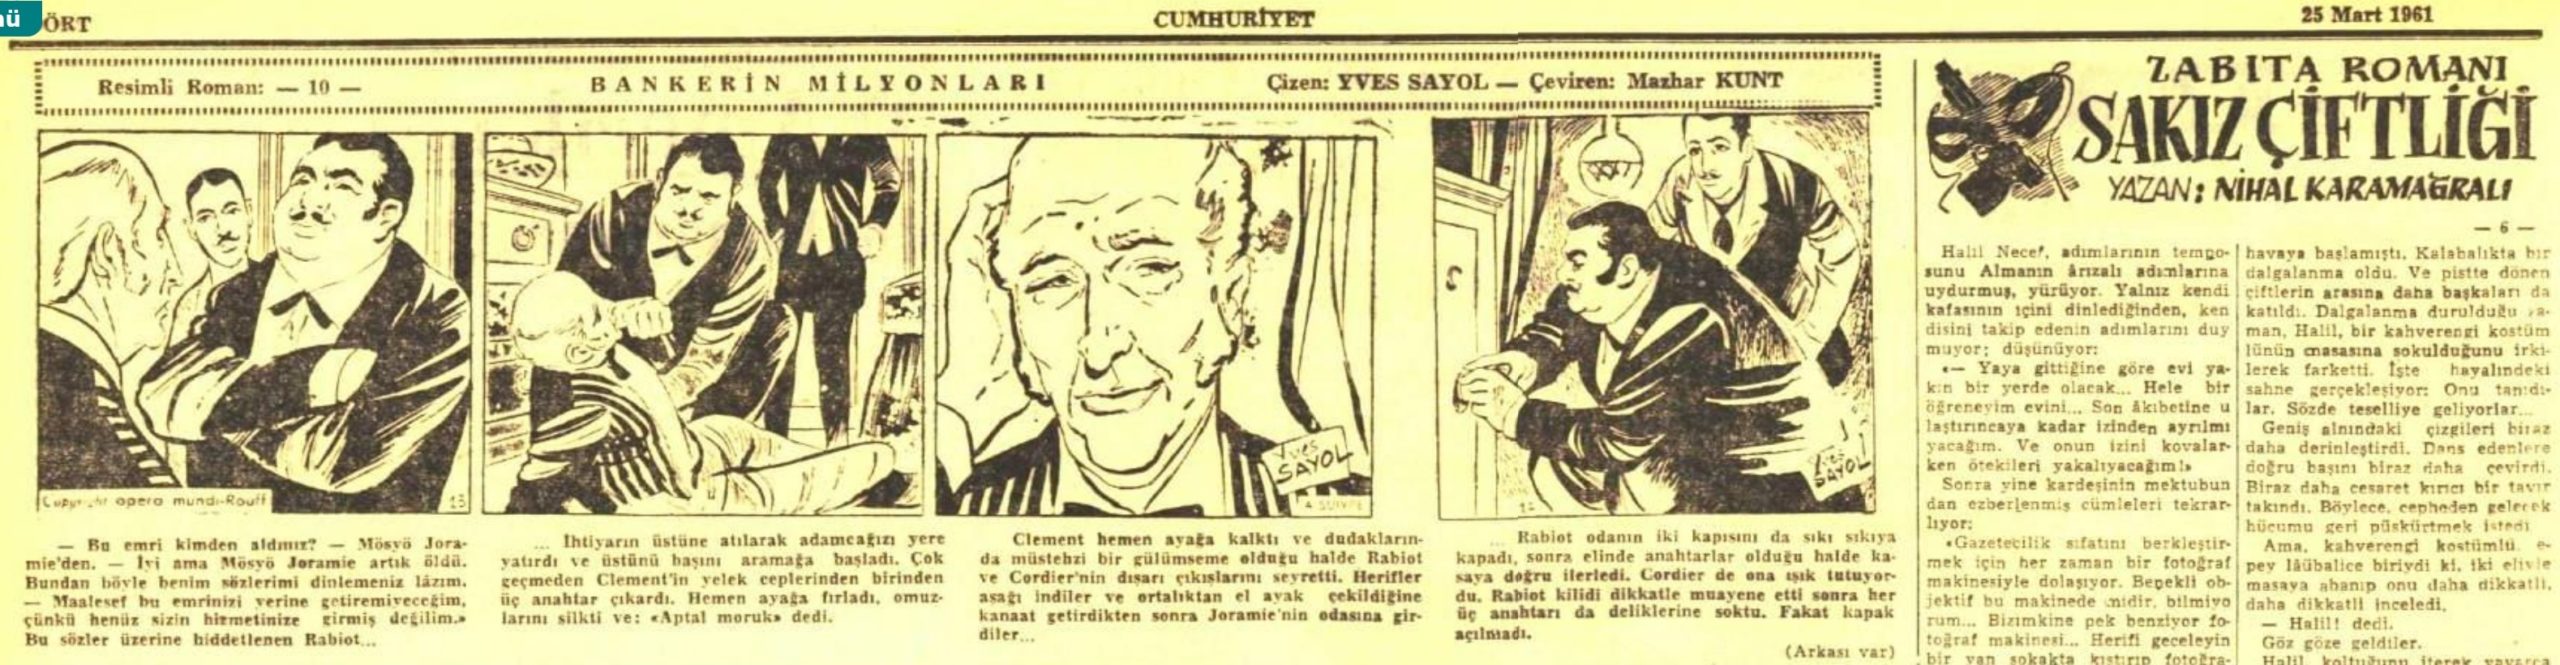 Cumhuriyet Gazetesinin 25 Mart 1961 tarihli baskısında yer alan Mazhar Kunt'un Yves Sayol'un Bankerin Milyonları adlı resimli romanına dair çevirisi